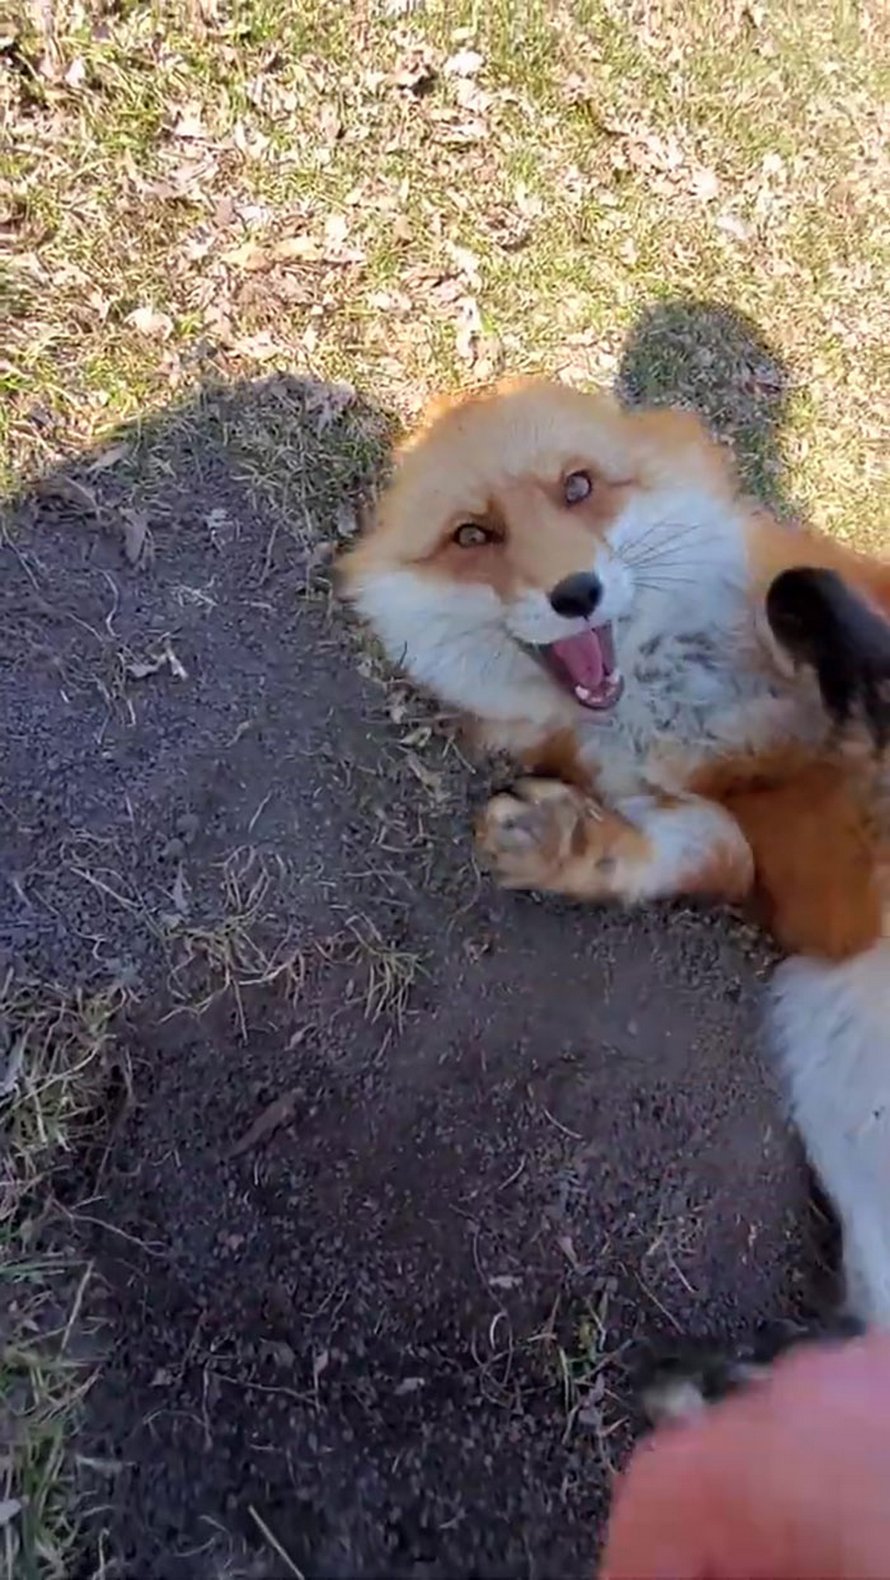 Ce renard rusé a volé le téléphone d’une femme, s’est enfui pendant qu’il filmait toujours et a essayé de l’enterrer